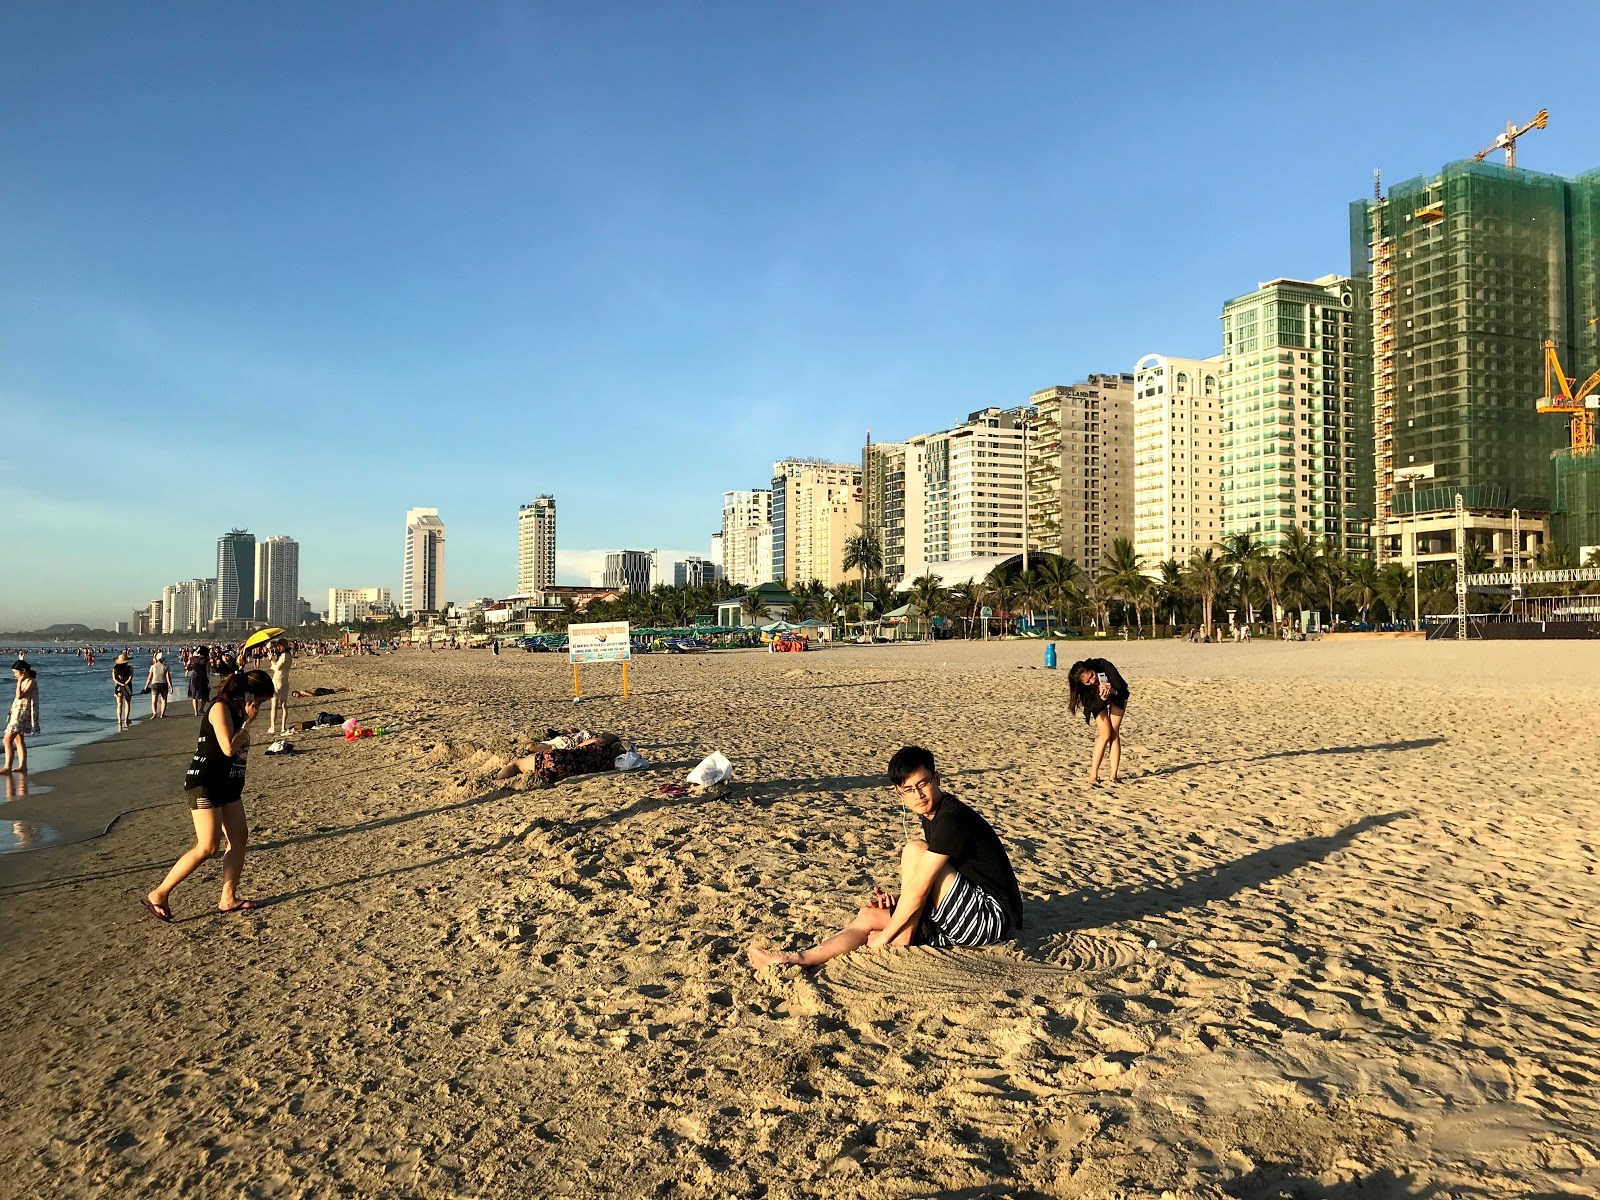 Zdjęcie My Khe Beach - popularne miejsce wśród znawców relaksu